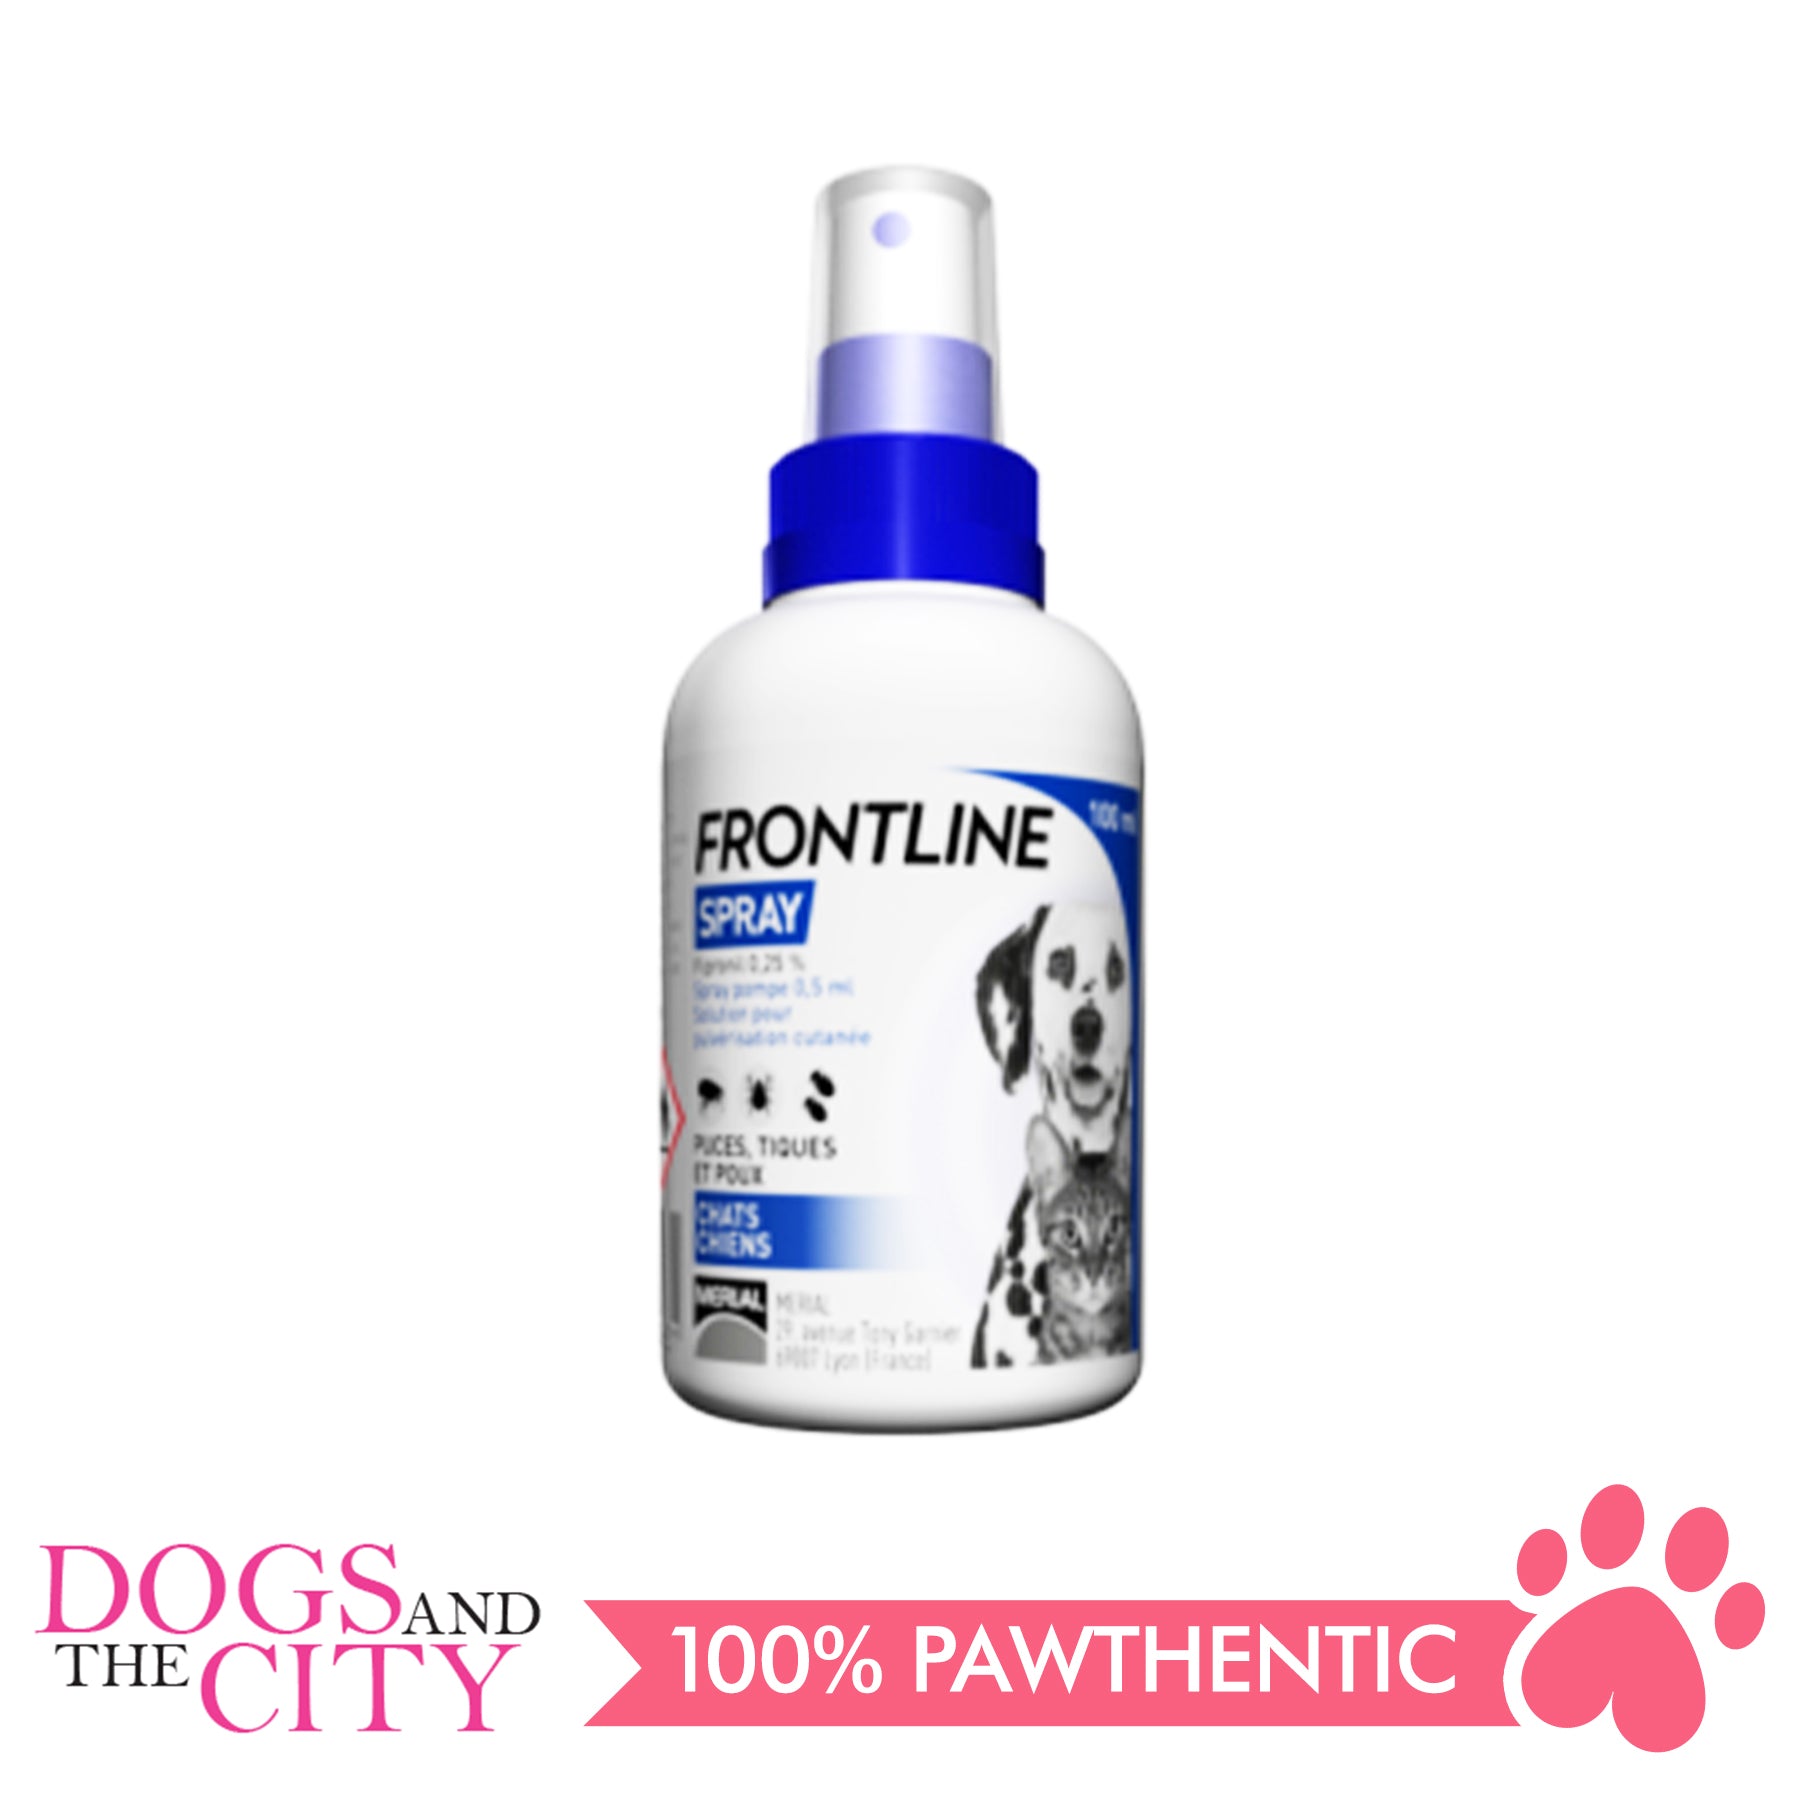 Frontline Spray for dogs & cats Price $7.00 in Phnom Penh, Cambodia - Danet